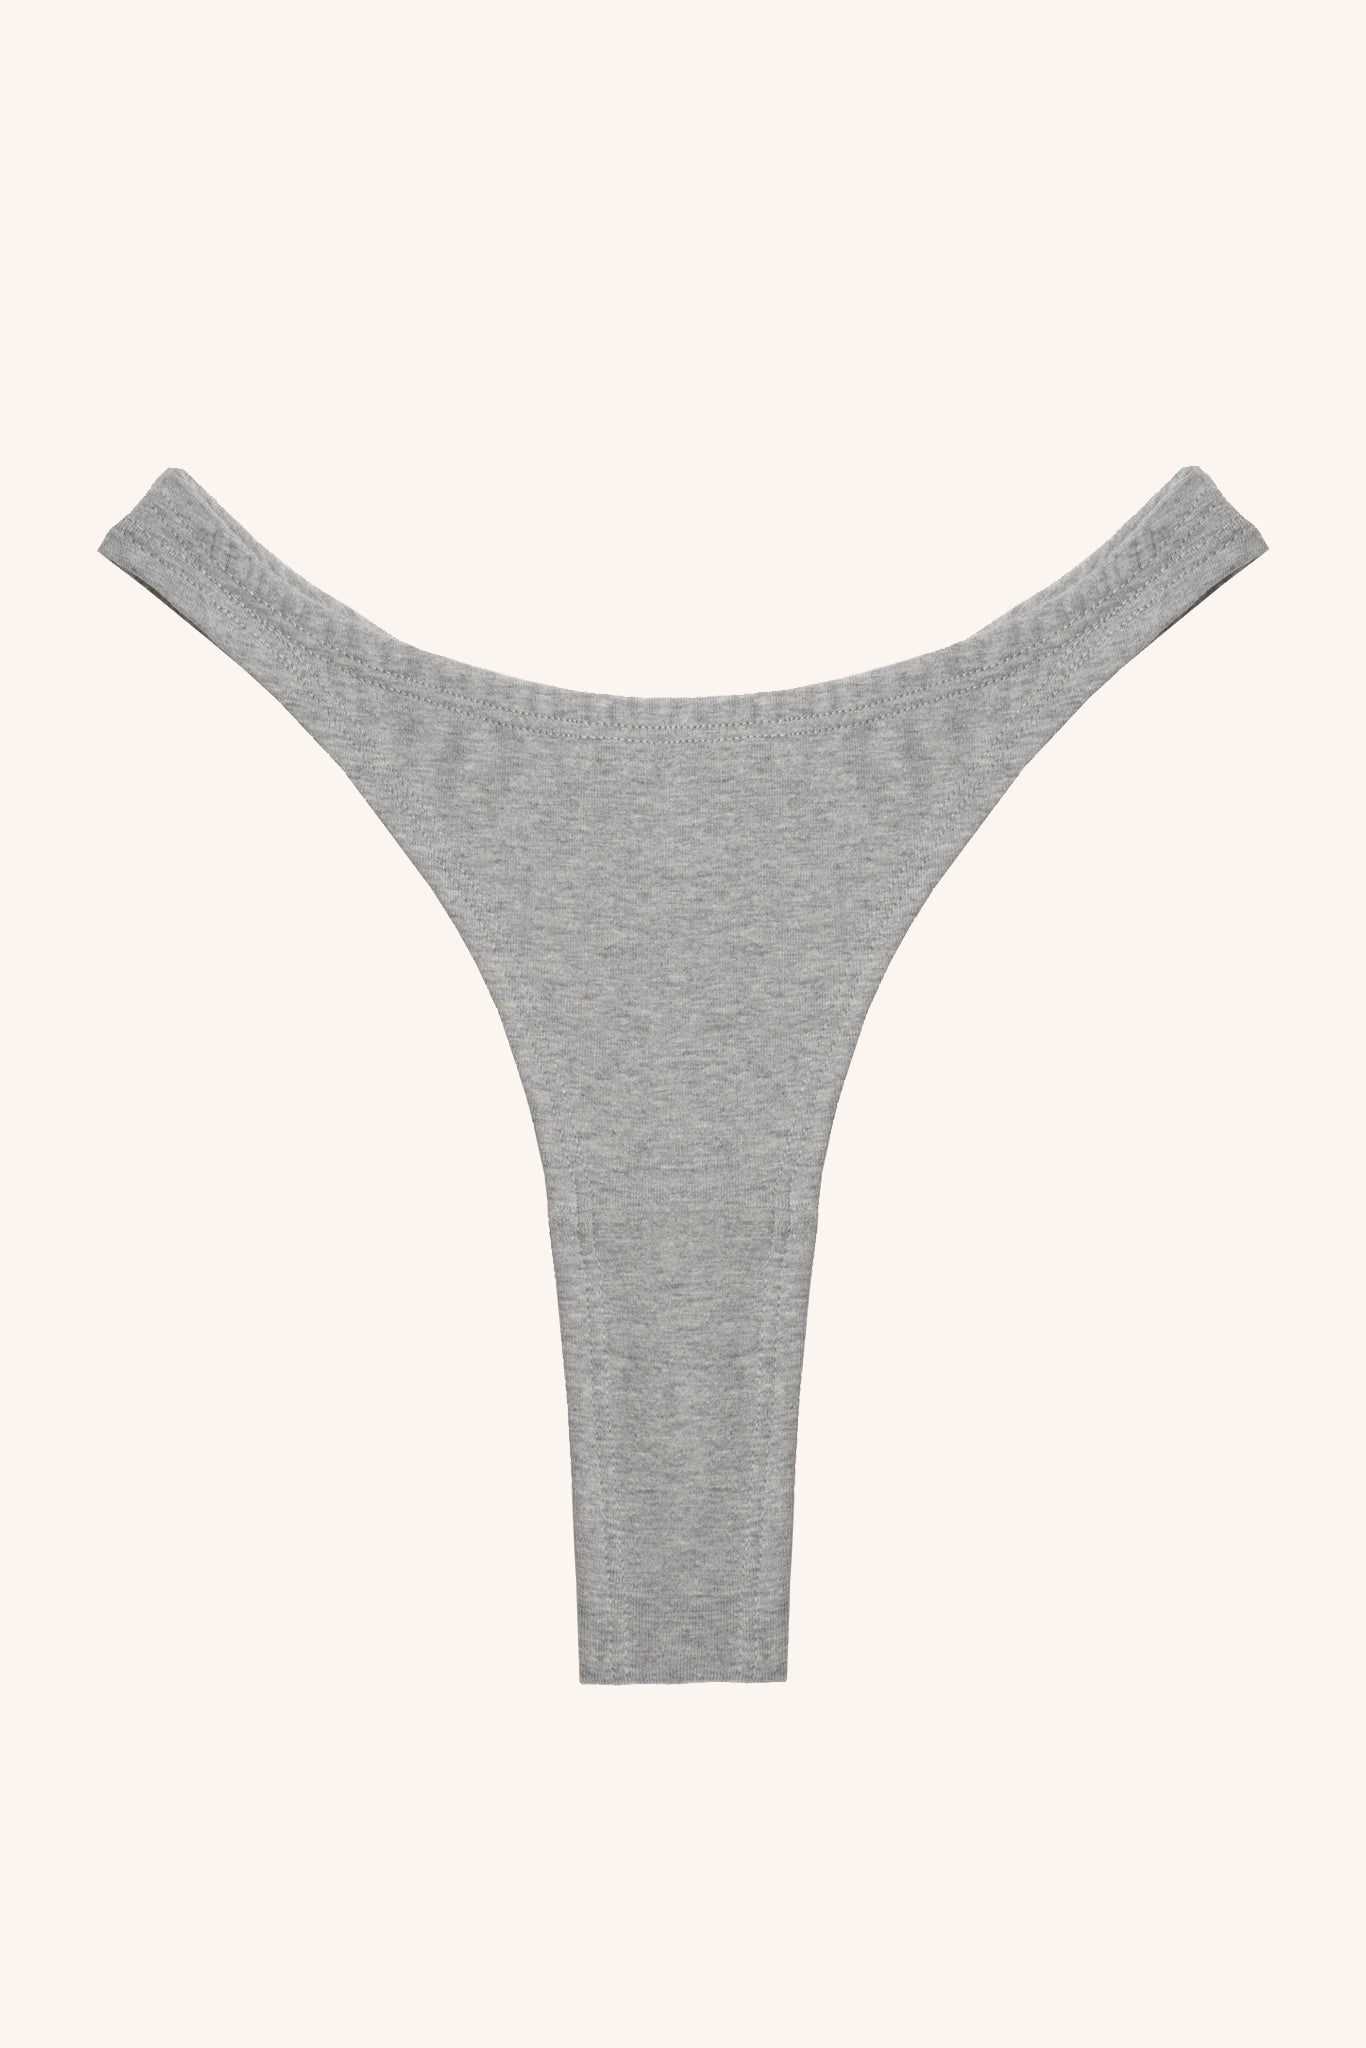 Val cotton high cut panties- grey – Toru & Naoko